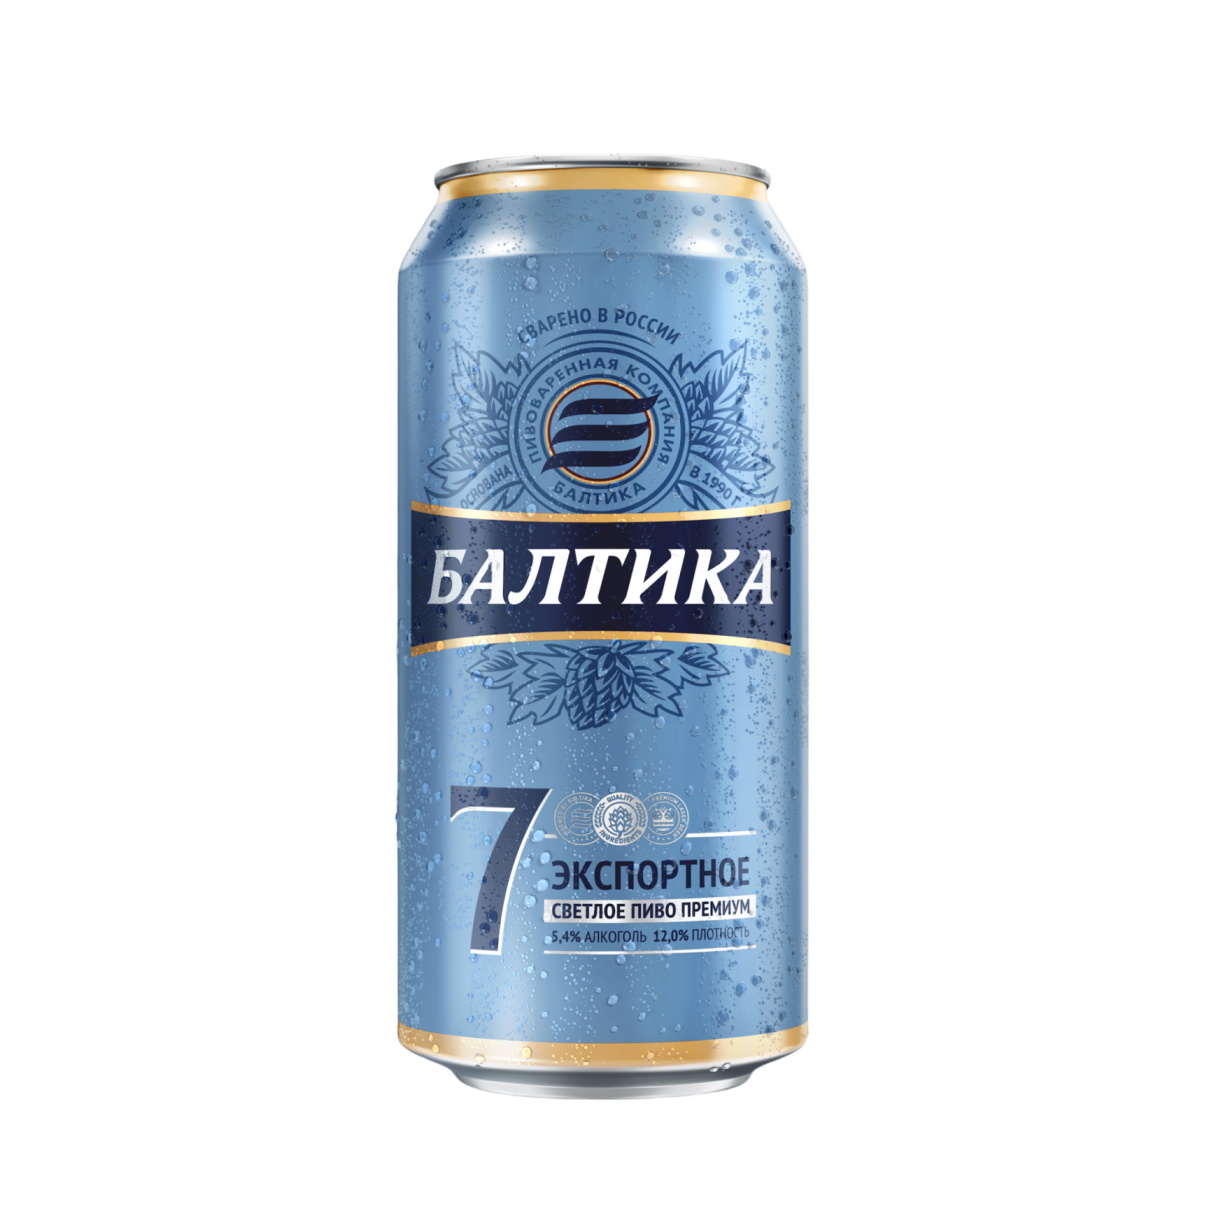 Пиво Балтика №7 св. 5,4% ж/б 0,9л